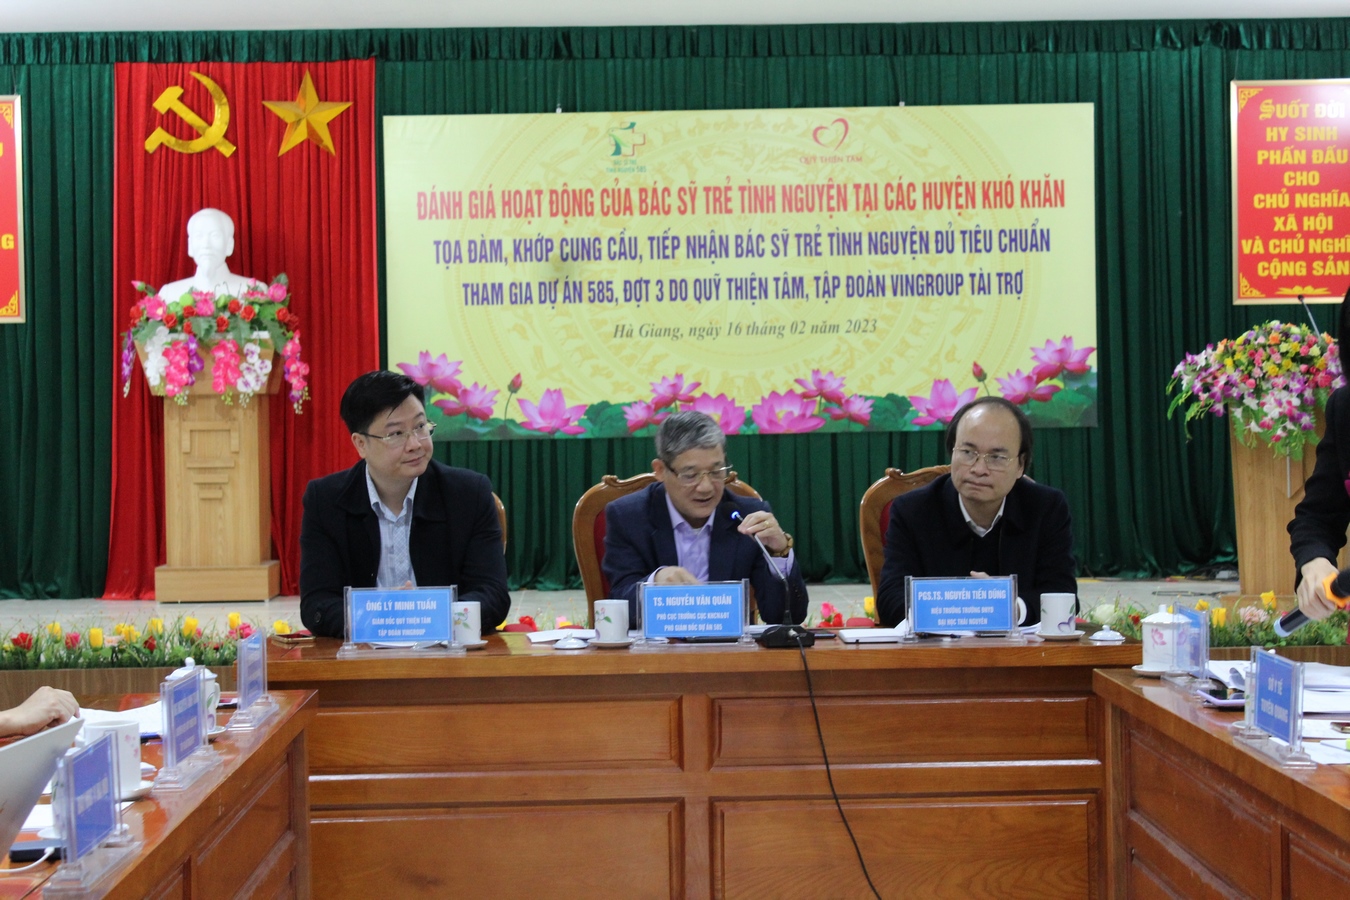 Tiếp tục khớp cung cầu, tiếp nhận bác sỹ trẻ 585 tại các huyện khó khăn các tỉnh Hà Giang và Tuyên Quang